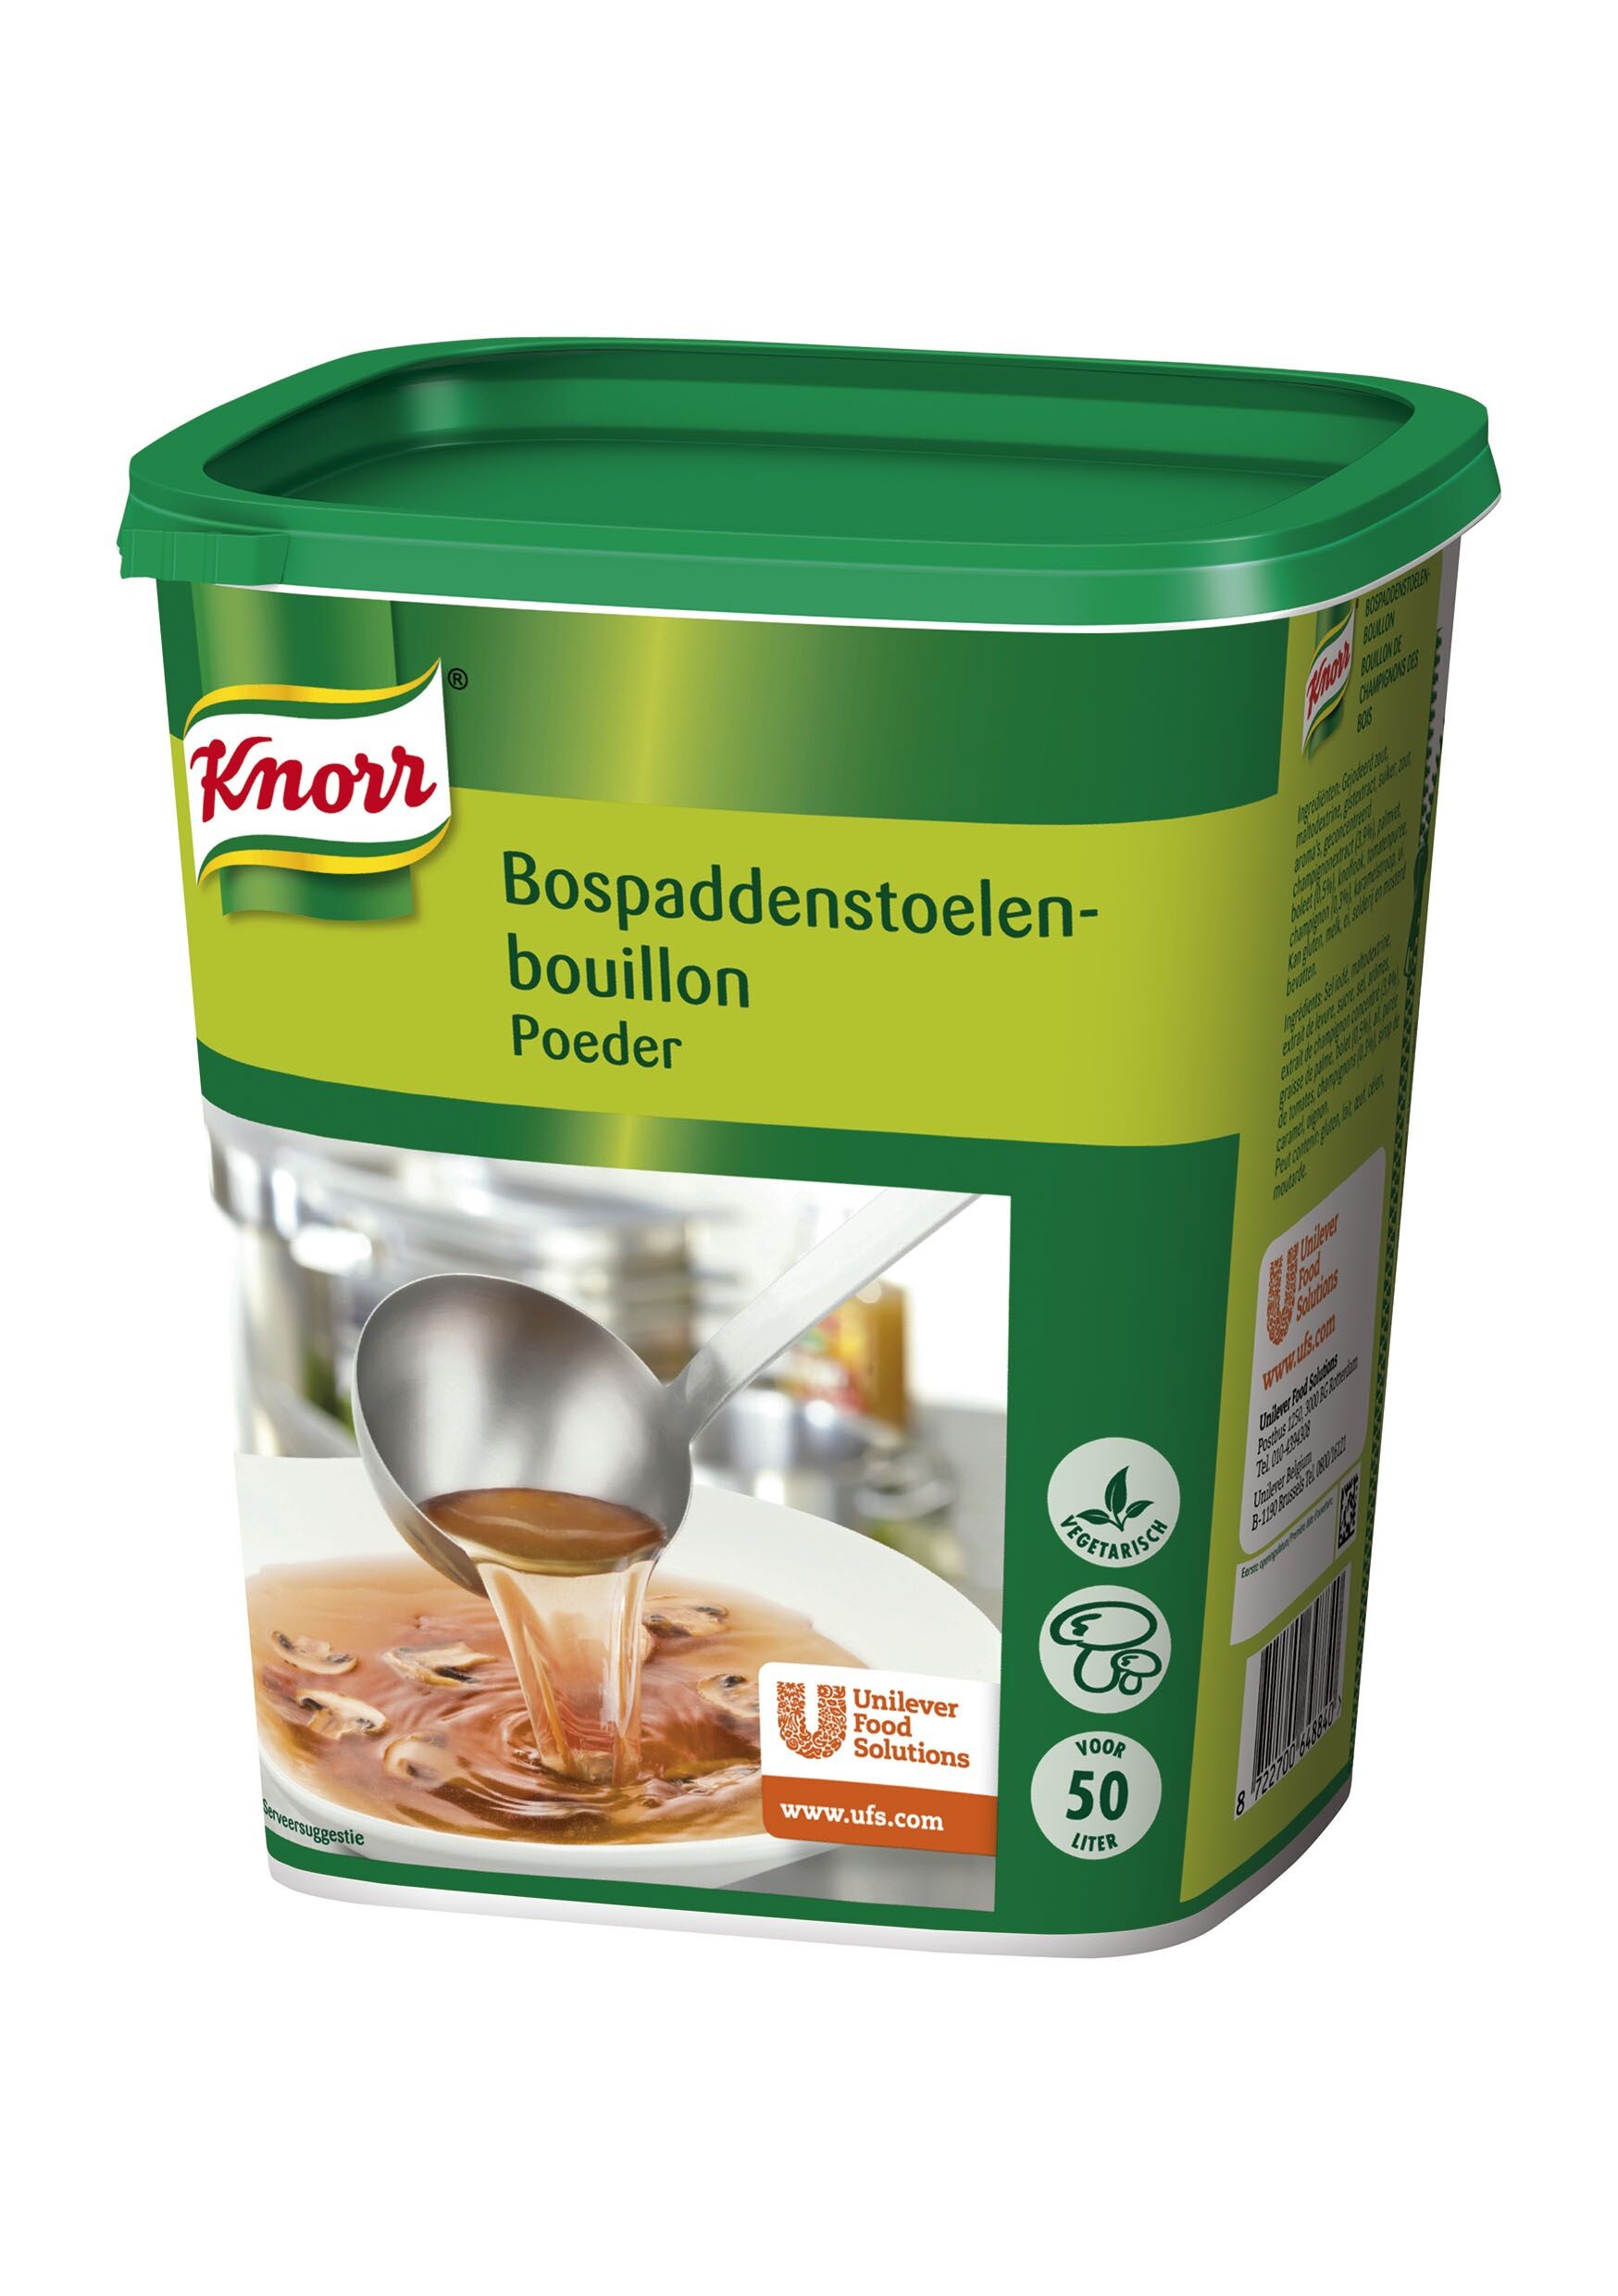 Knorr Bospaddestoelen Bouillon poeder 1kg